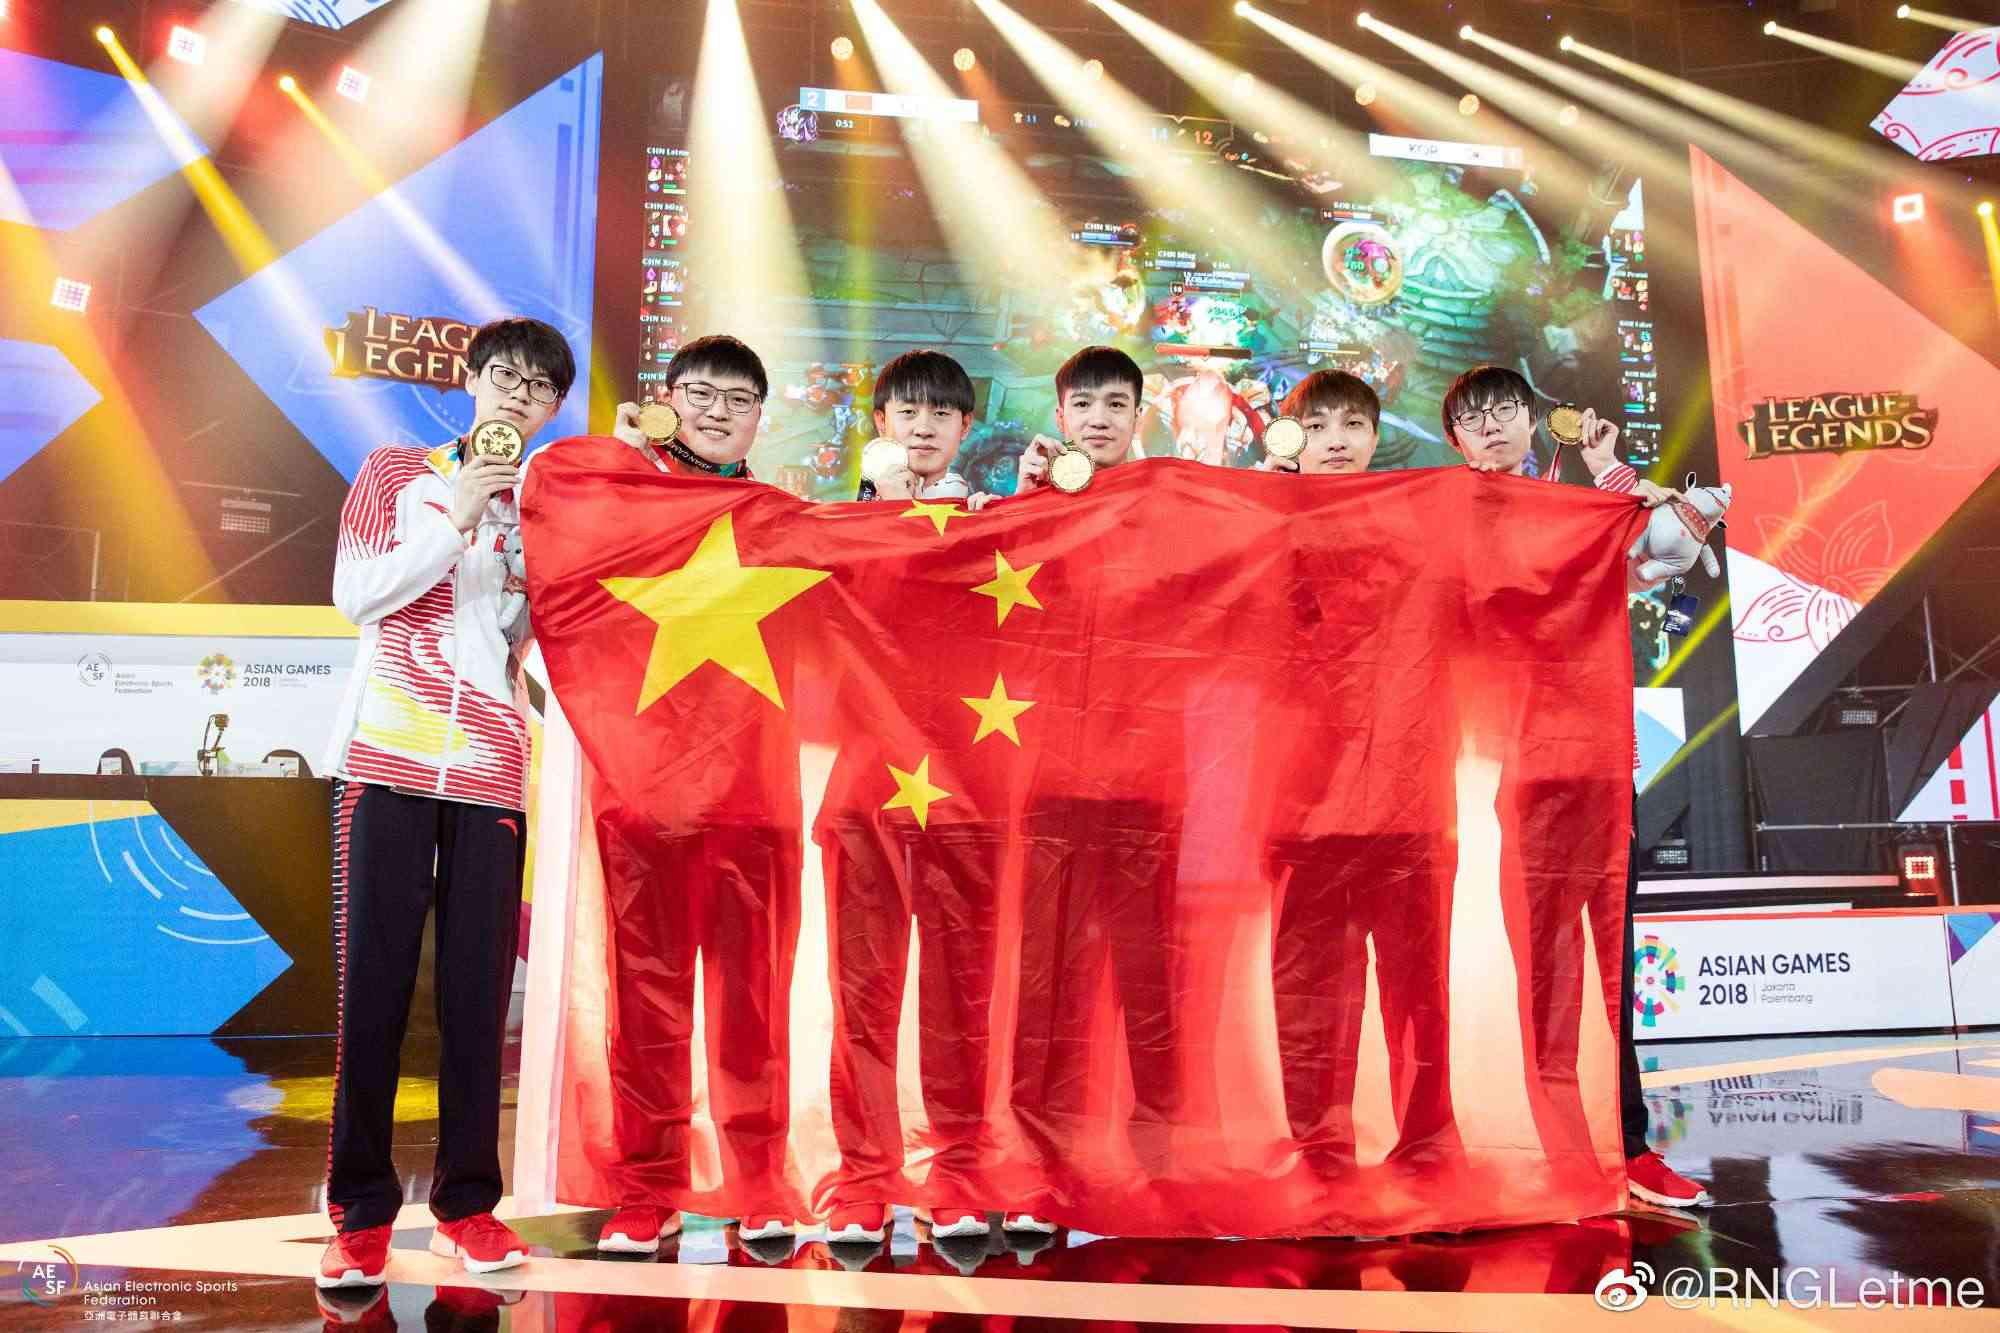 Letme (thứ 3 từ phải sang) và đội tuyển Liên Minh Huyền Thoại Trung Quốc giành chiến thắng trước đội tuyển Hàn Quốc tại ASIAD 2018